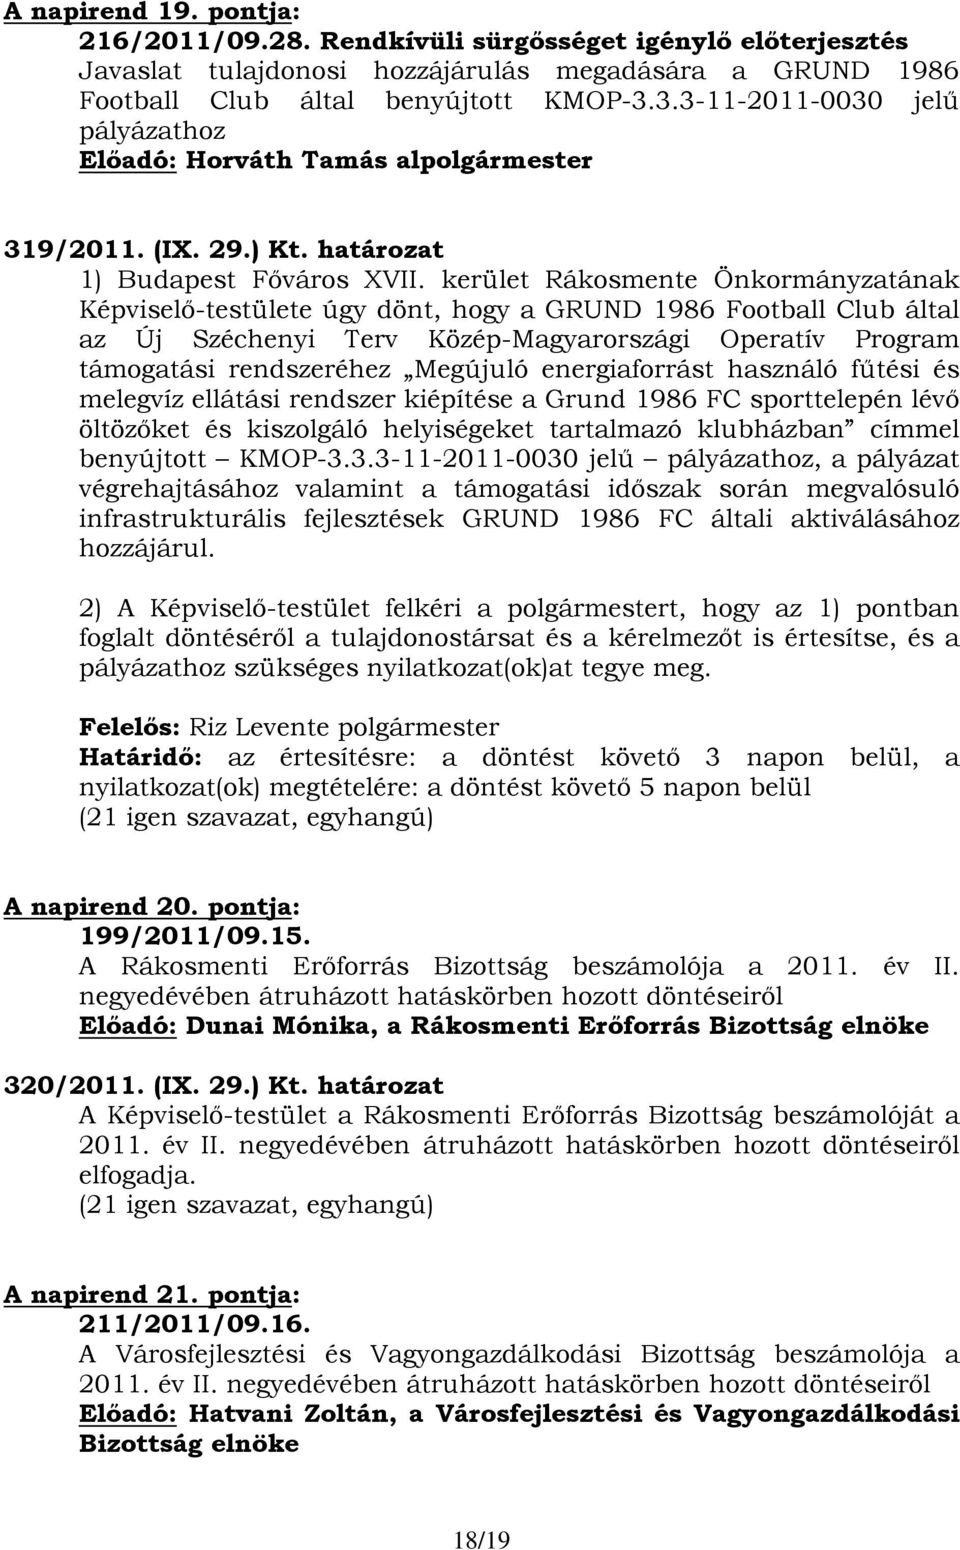 kerület Rákosmente Önkormányzatának Képviselő-testülete úgy dönt, hogy a GRUND 1986 Football Club által az Új Széchenyi Terv Közép-Magyarországi Operatív Program támogatási rendszeréhez Megújuló